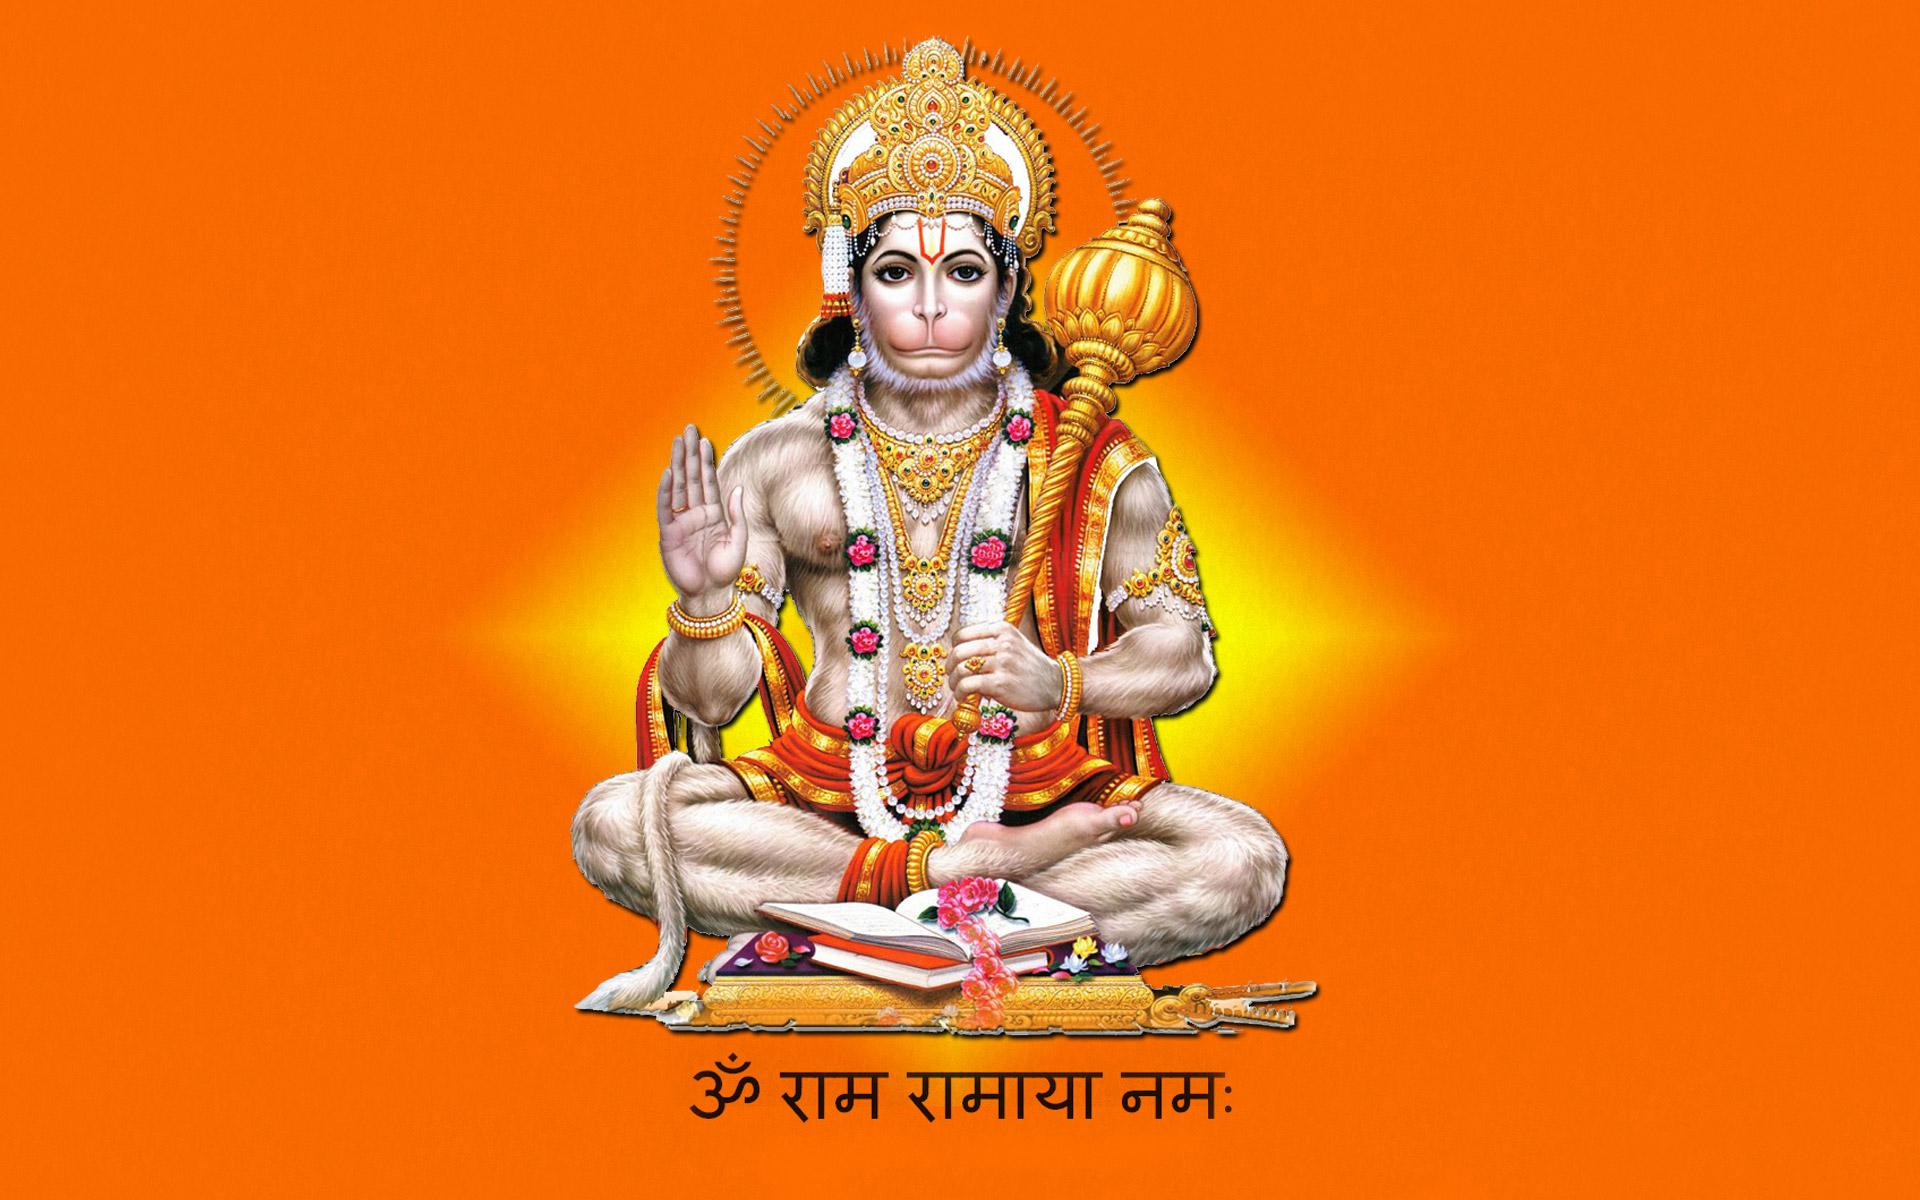 18 Hanuman Hd Pc Wallpaper 1920x1080 42 God Wallpapers On Wallpaperplay Lord Hanuman Ji 26 August 2021